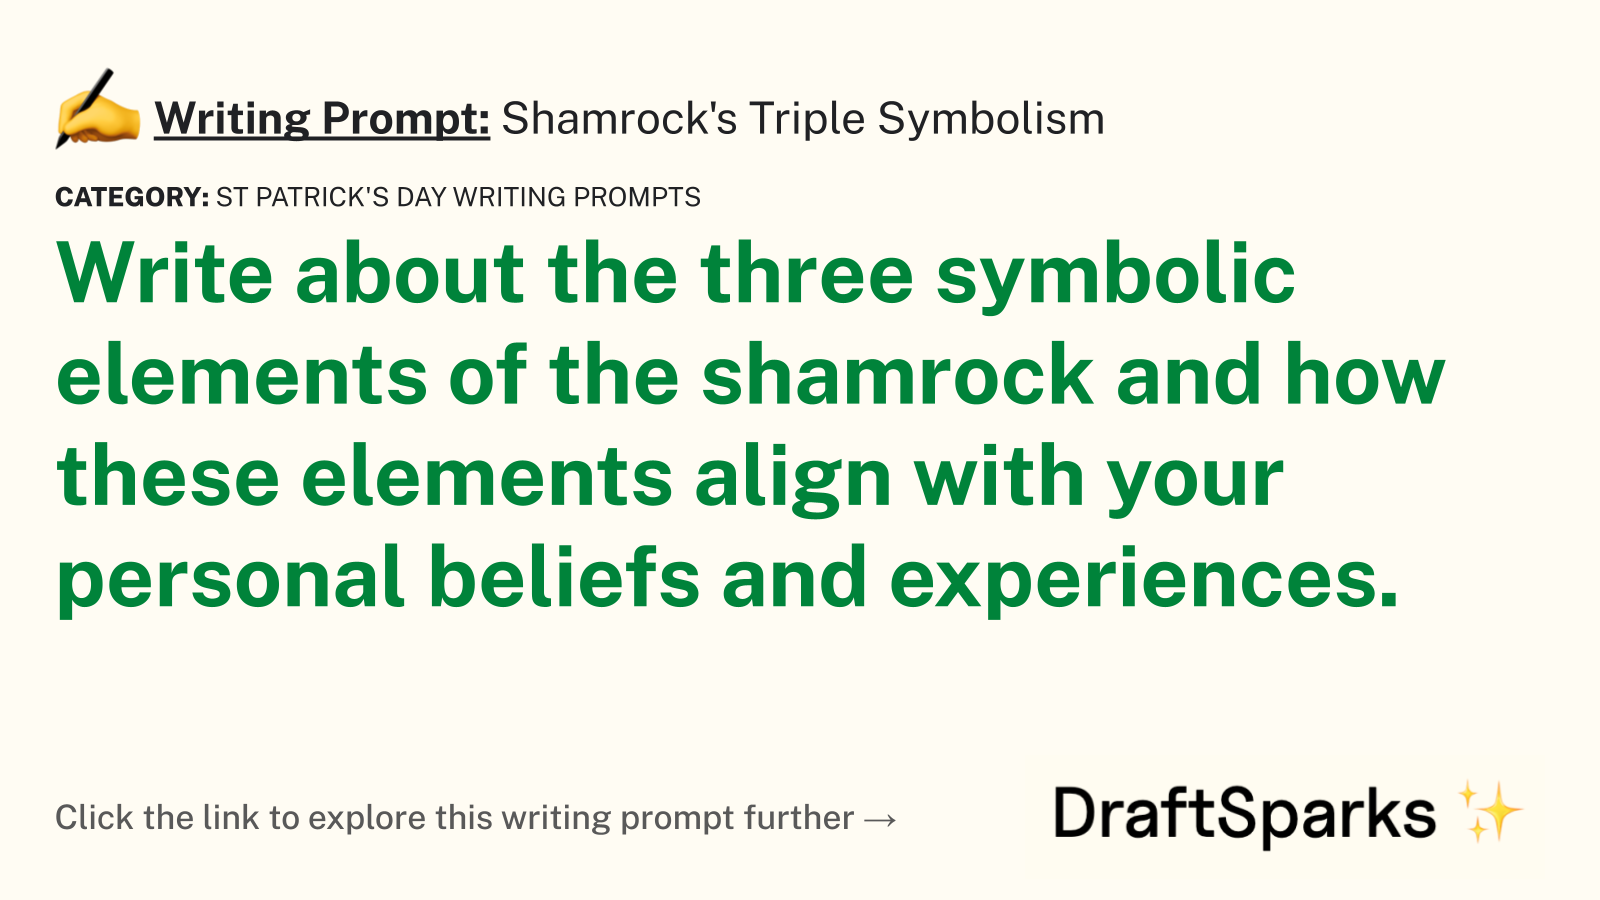 Shamrock’s Triple Symbolism